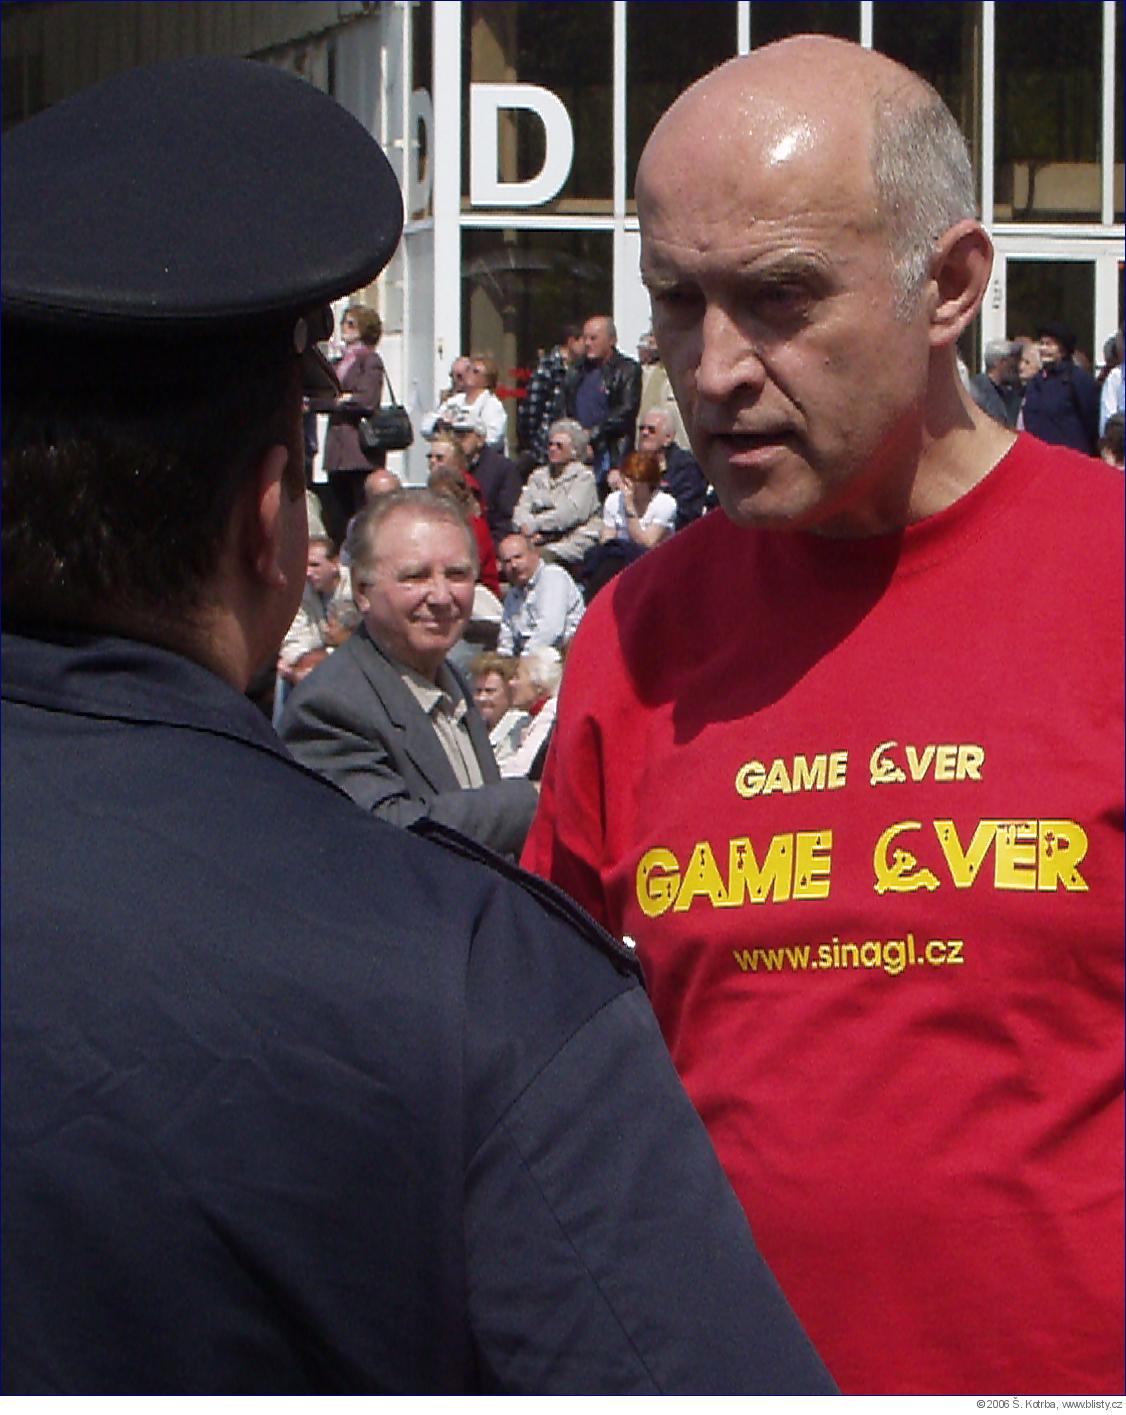 Aktivista Šinágl vysvětluje policistům, že by měli konat a zasáhnout proti prvomájovému setkání komunistů.